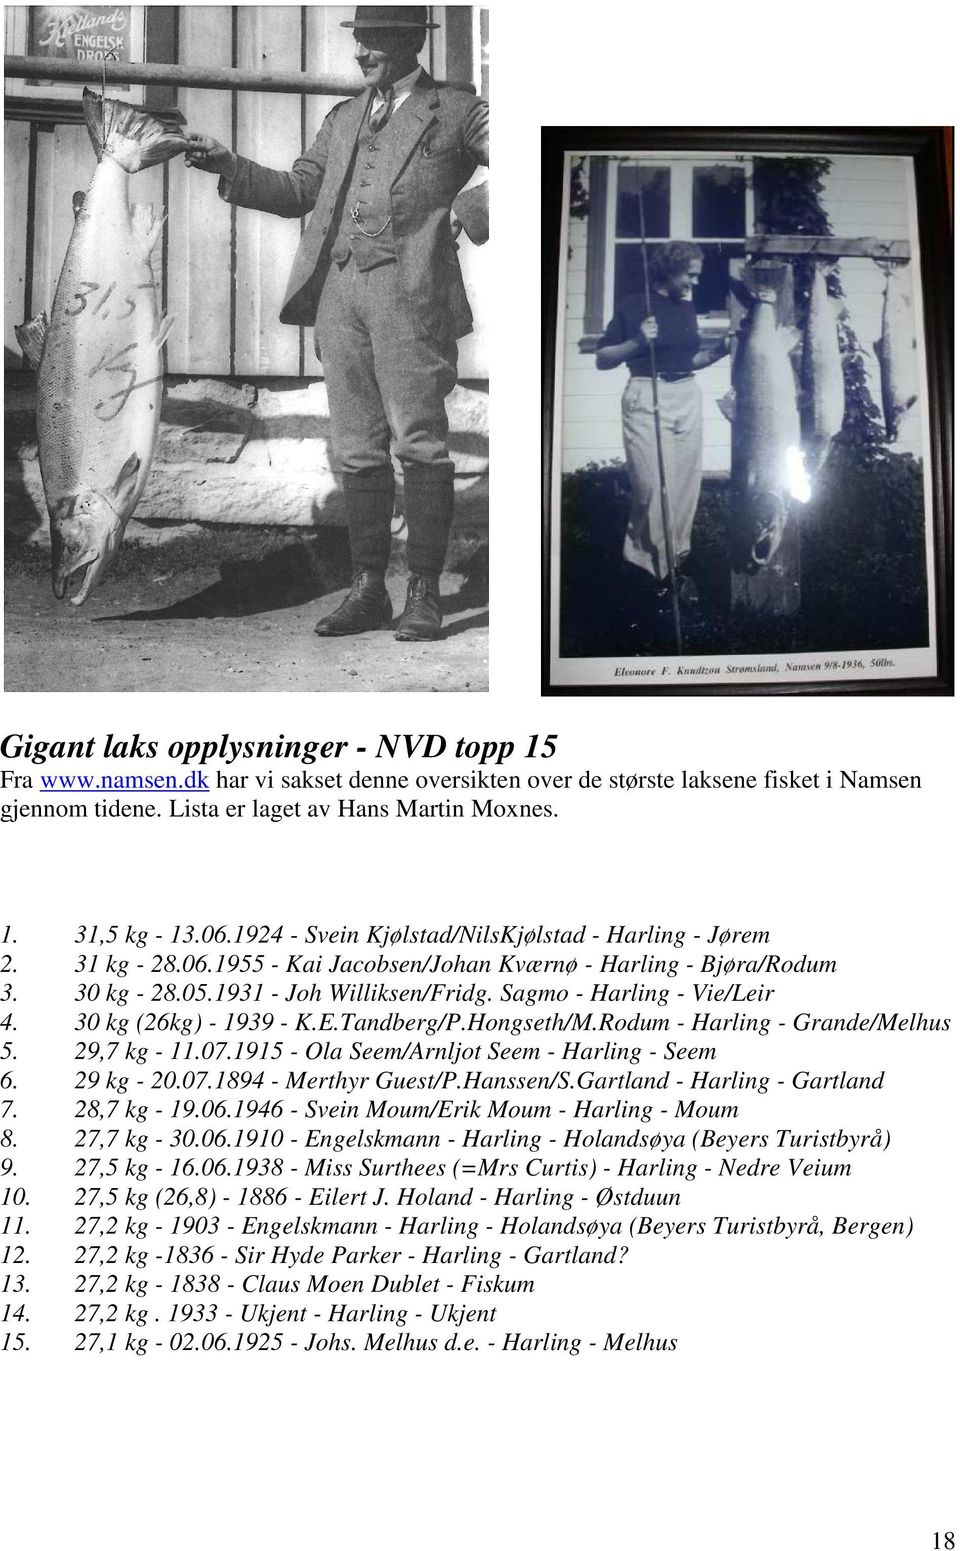 Sagmo - Harling - Vie/Leir 4. 30 kg (26kg) - 1939 - K.E.Tandberg/P.Hongseth/M.Rodum - Harling - Grande/Melhus 5. 29,7 kg - 11.07.1915 - Ola Seem/Arnljot Seem - Harling - Seem 6. 29 kg - 20.07.1894 - Merthyr Guest/P.